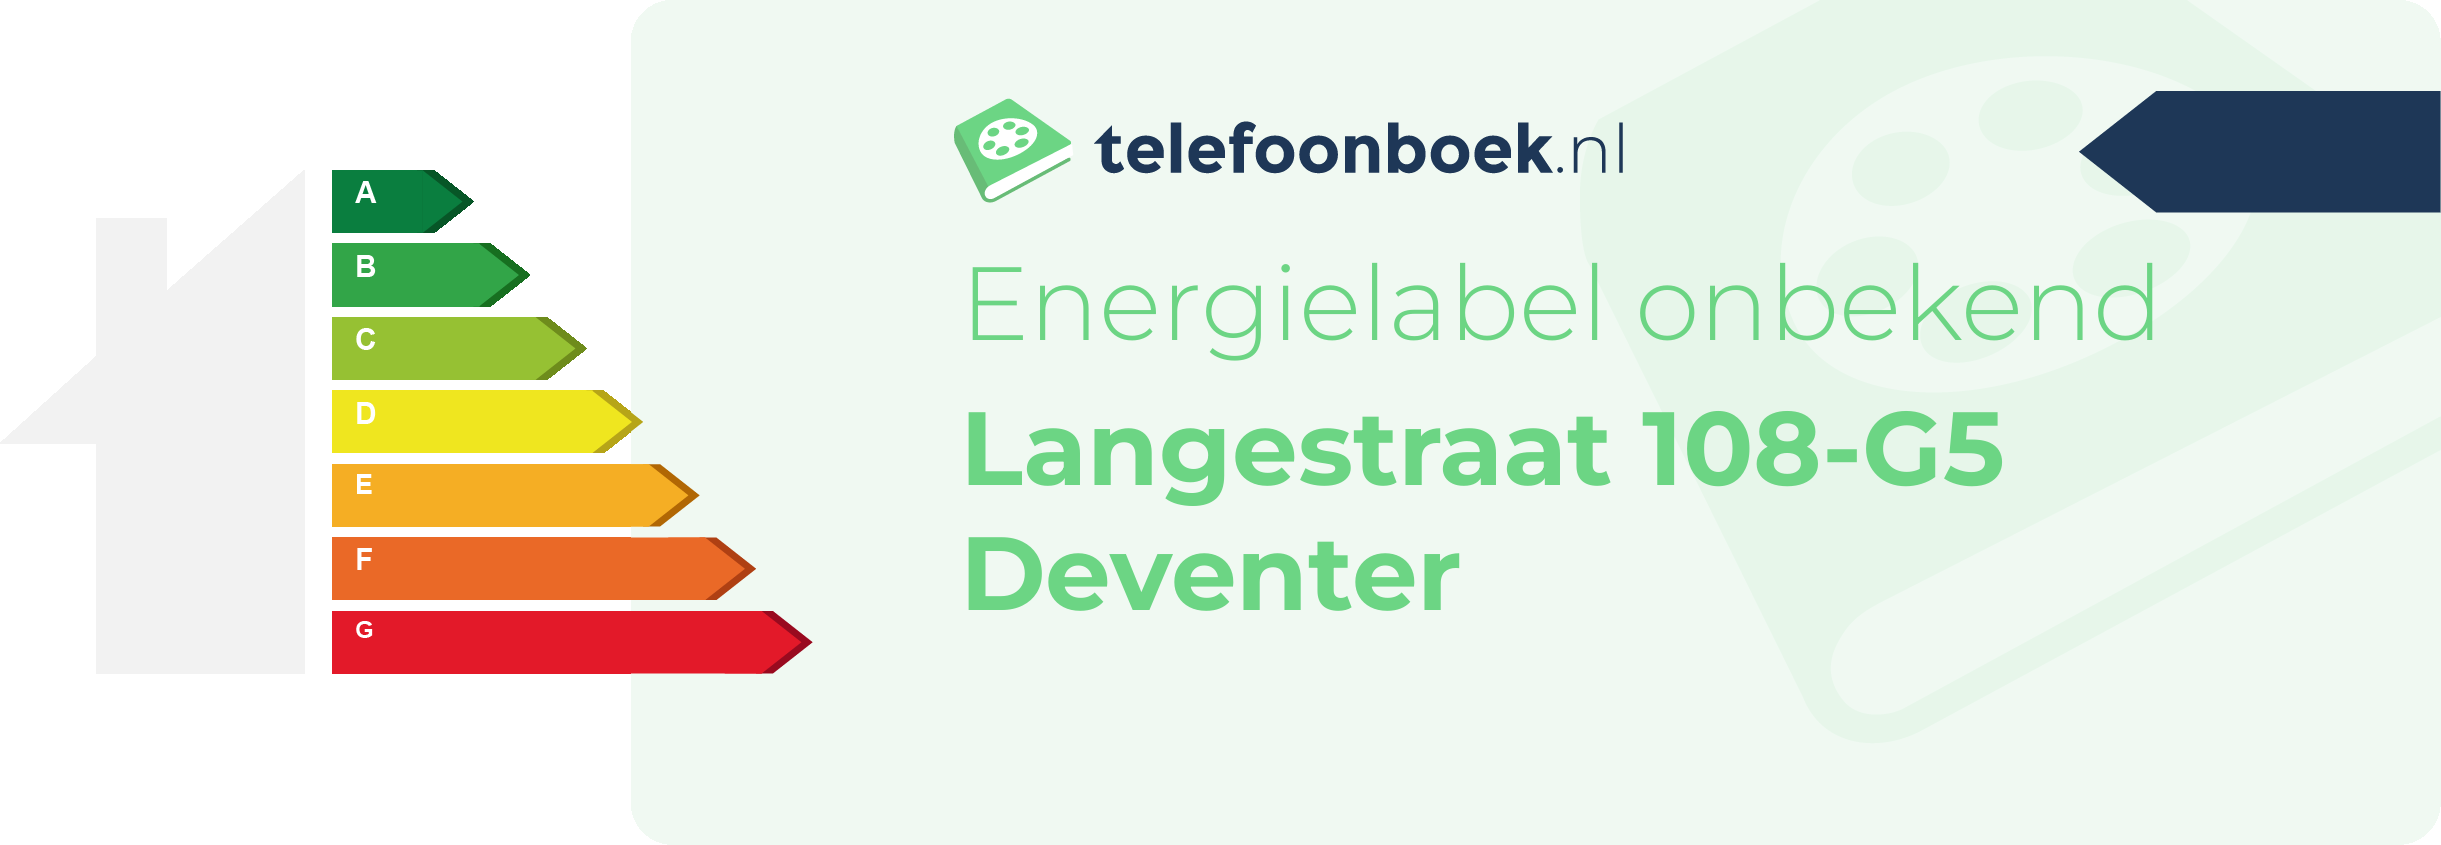 Energielabel Langestraat 108-G5 Deventer